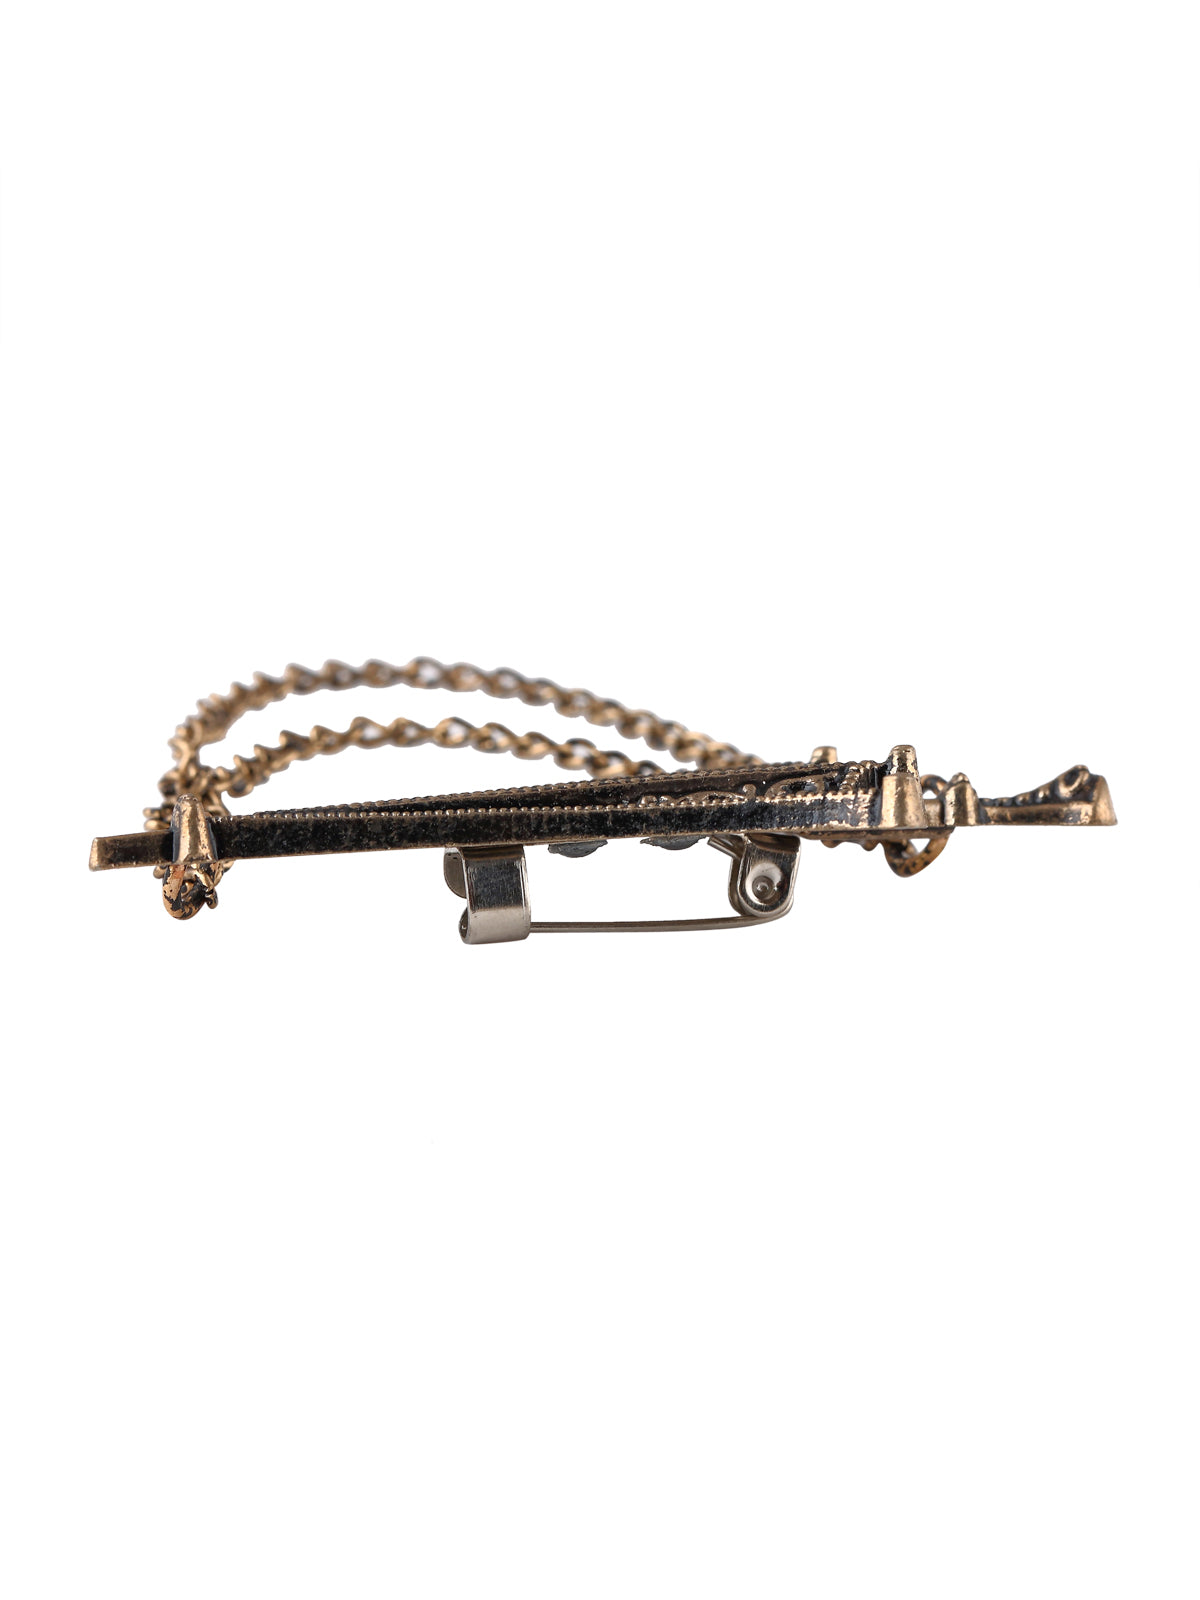 Vintage Antique Brass Umbrella Chain Brooch